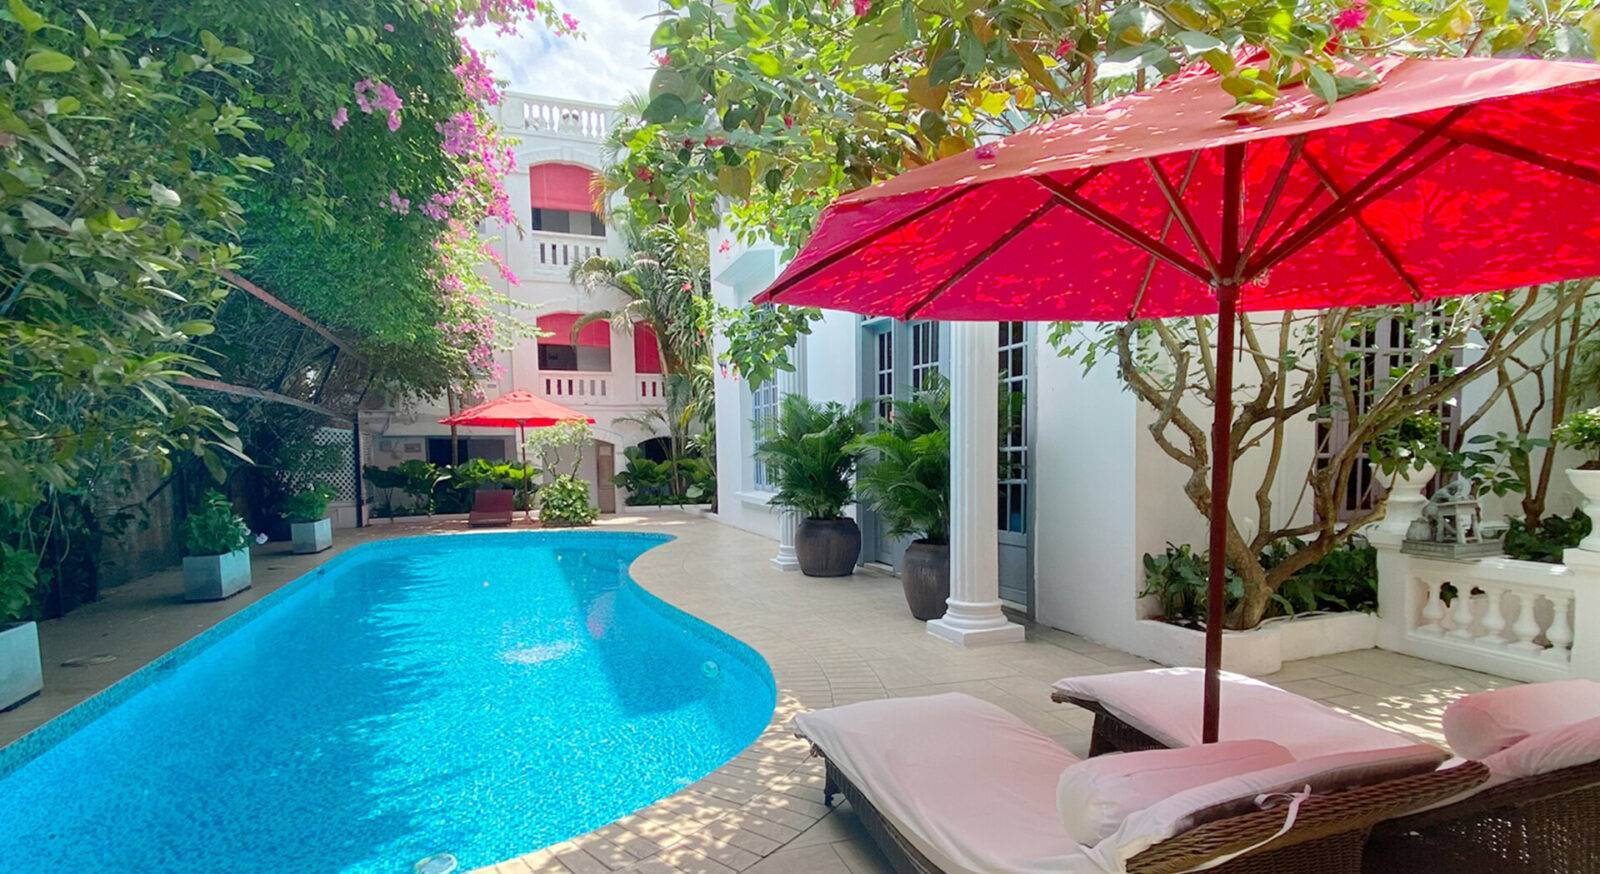 Spa L'Apothiquaire Saigon, Ho Chi Minh | Best Spa In Saigon | L’Apothiquaire French Day Spa